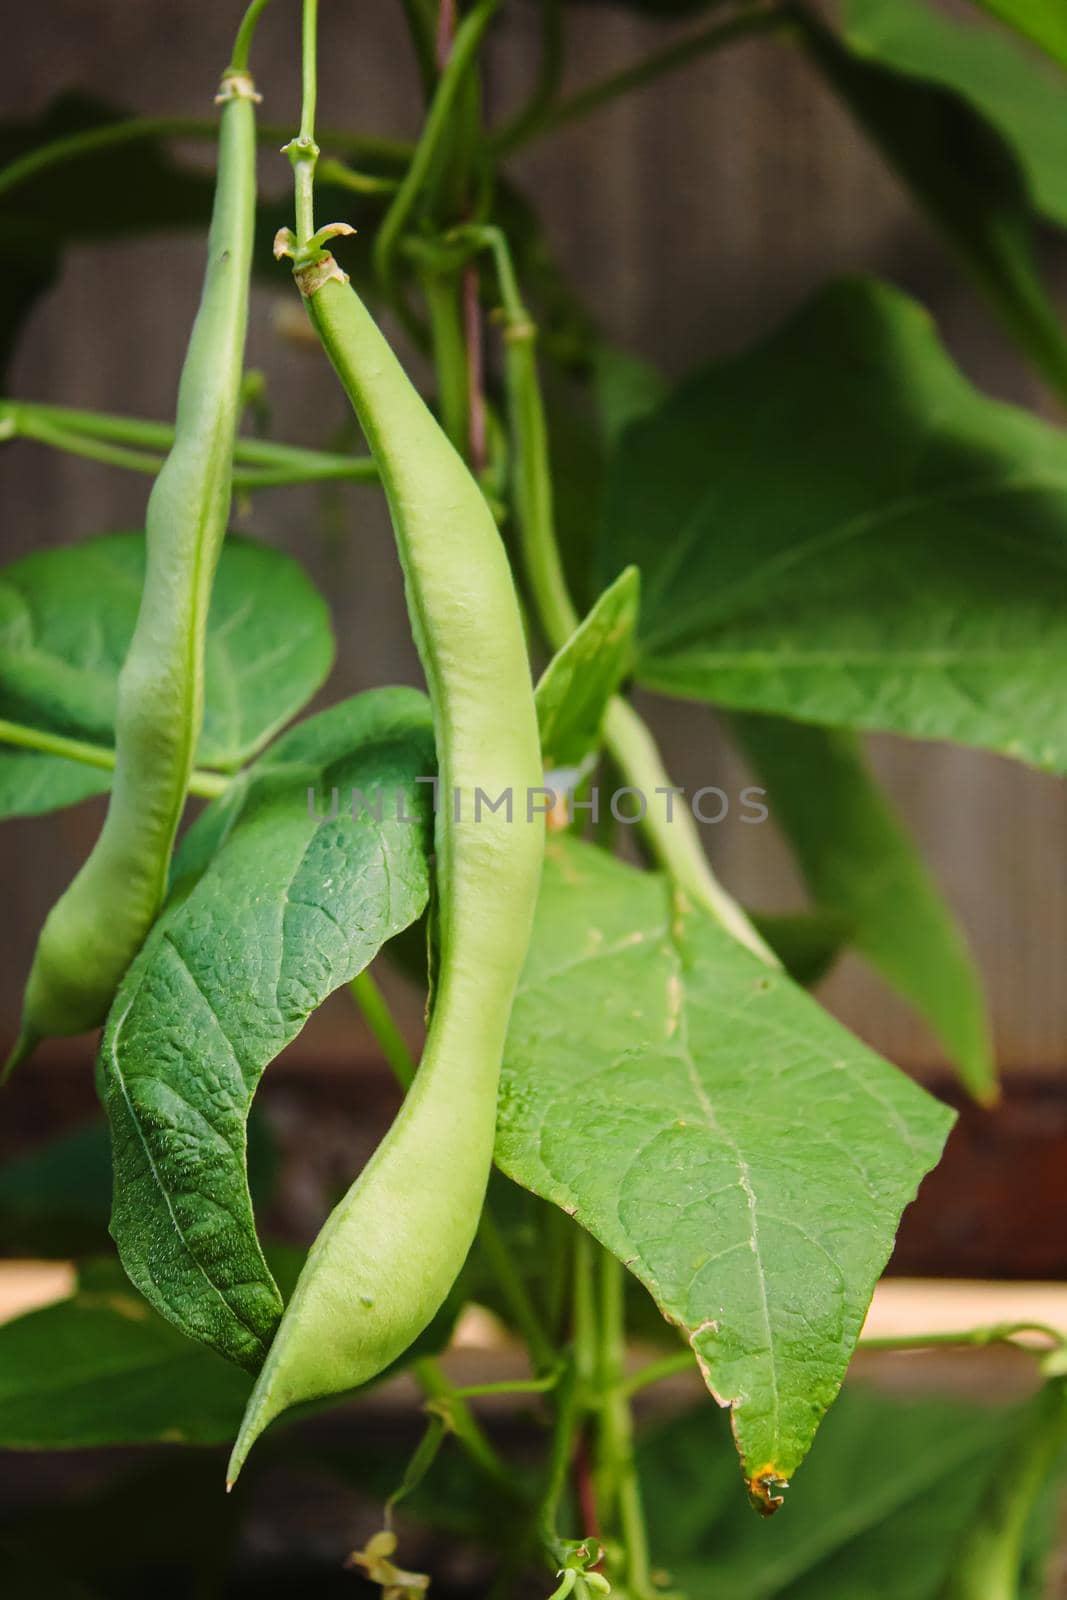 selenium bean pods in garden. selective focus by mila1784